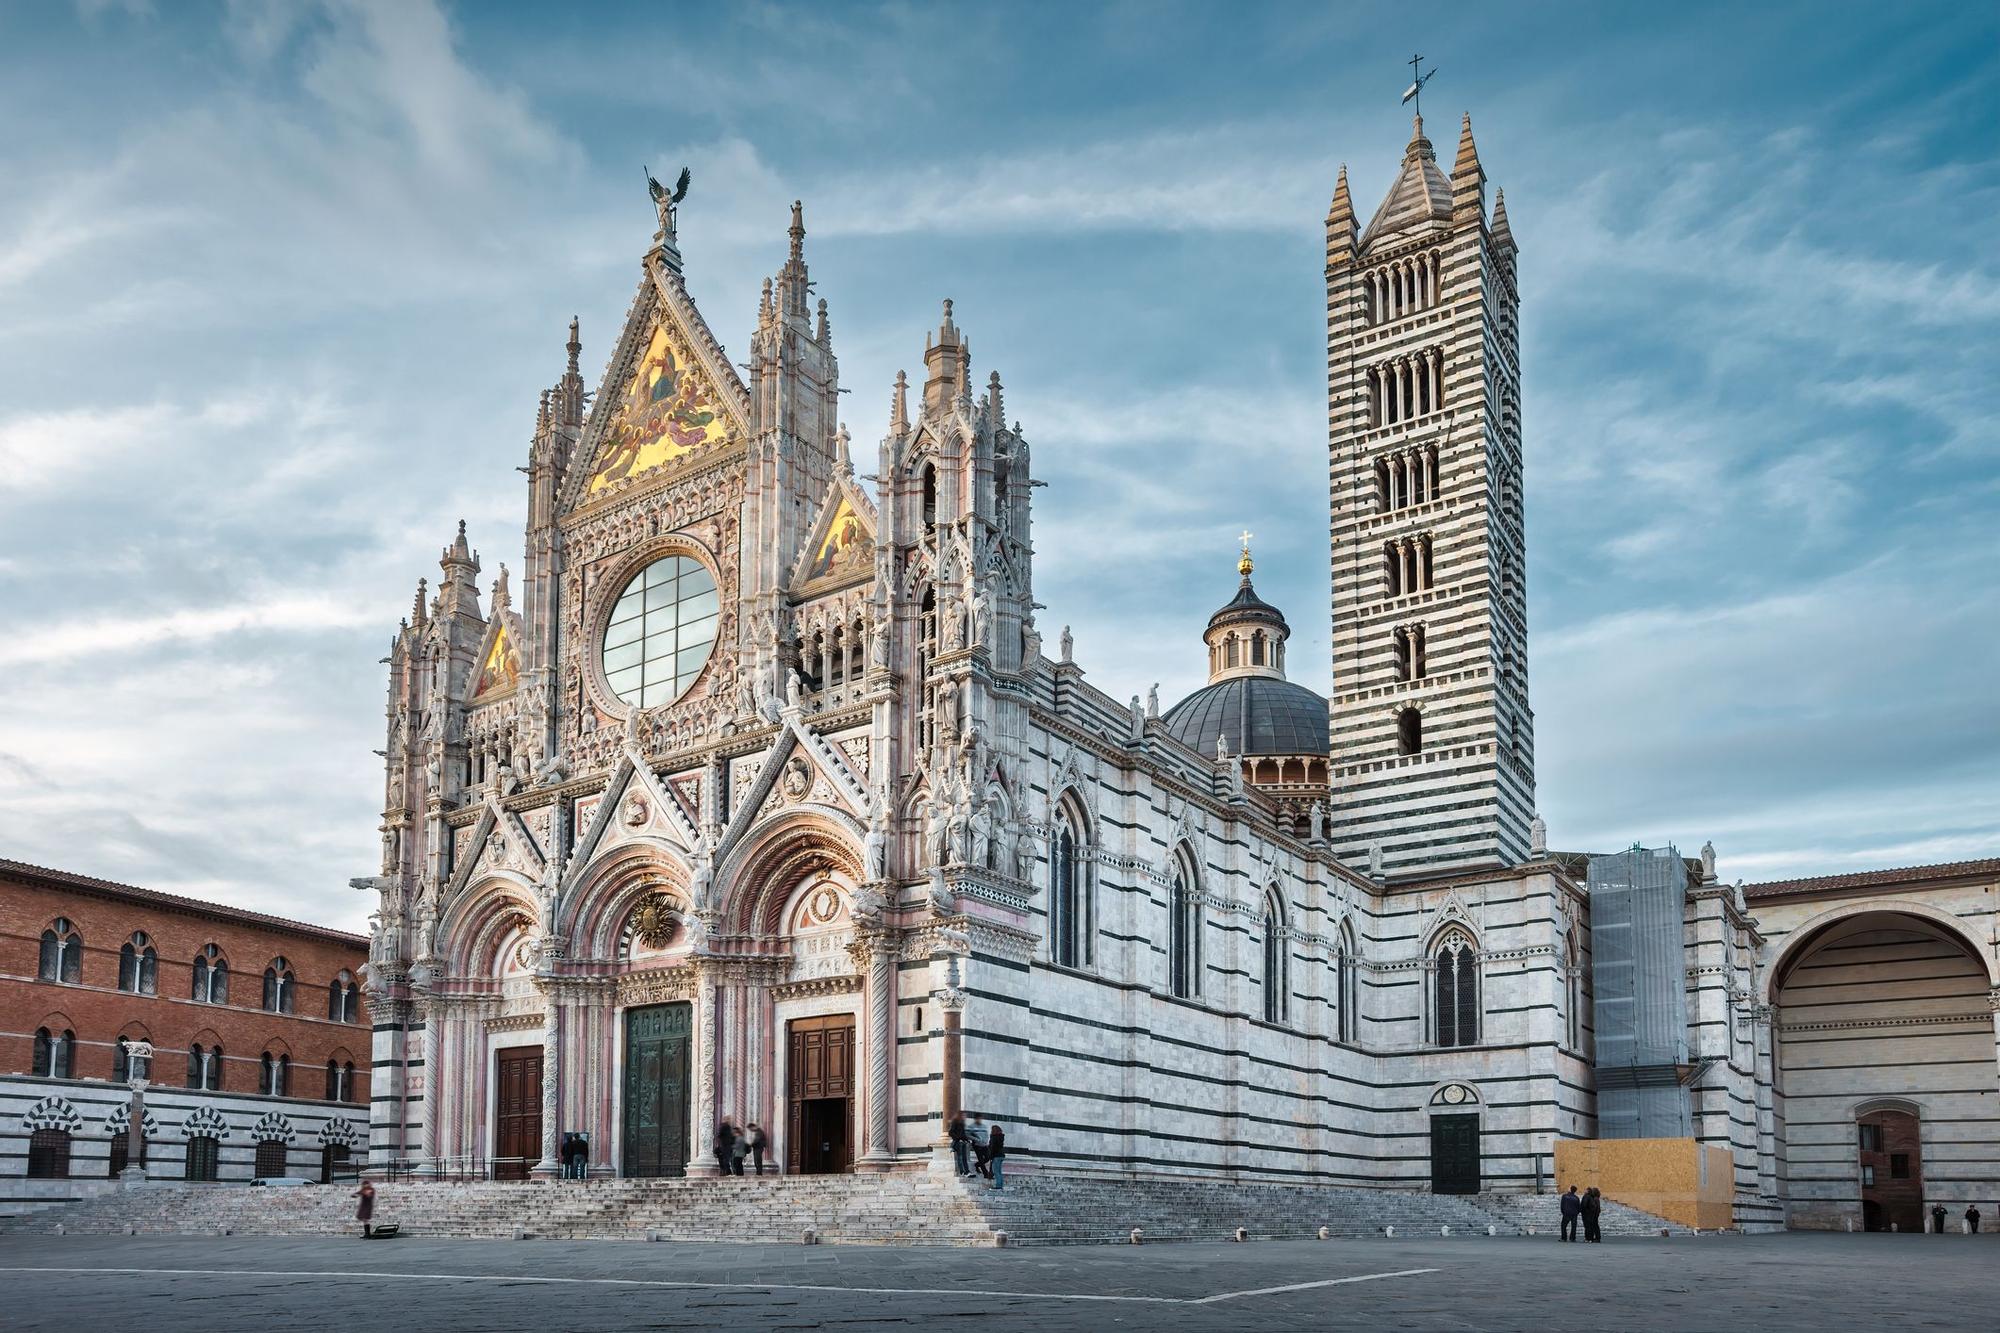 El Duomo de Siena característico por su fachada de mármol blanco